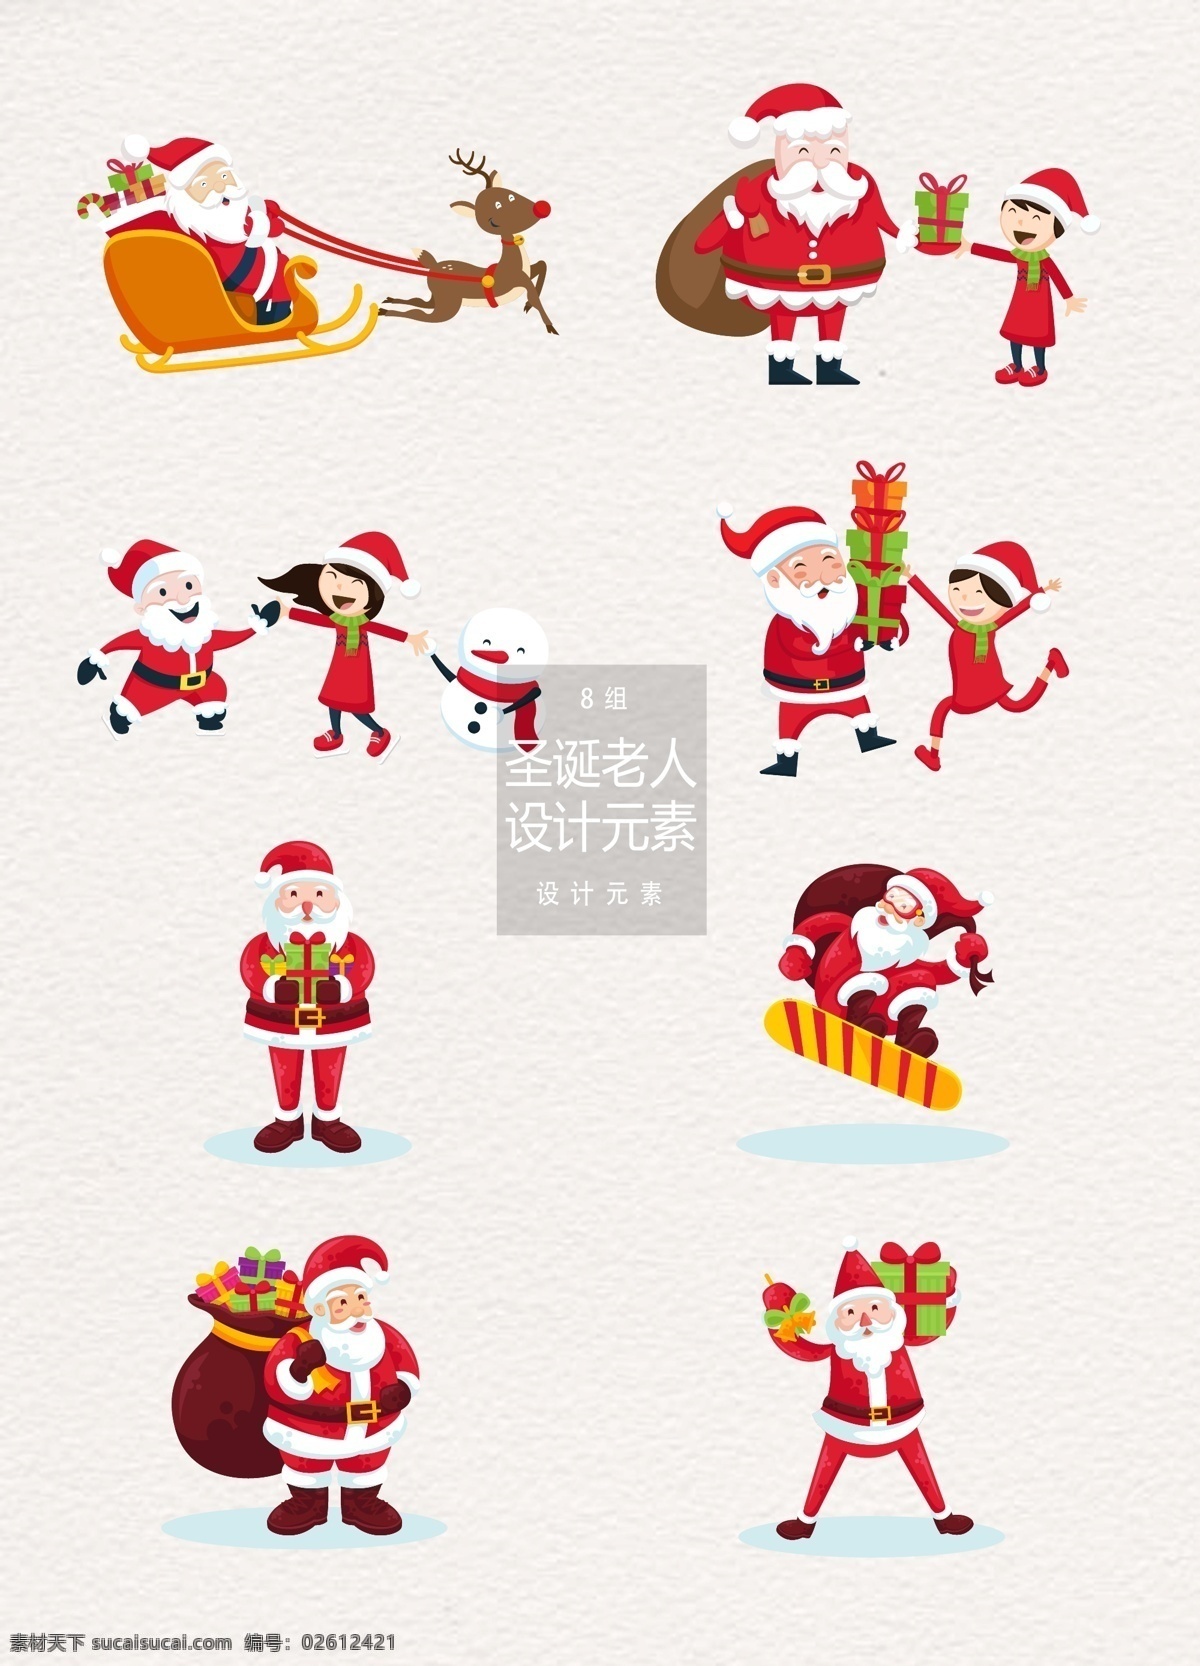 圣诞节 卡通 圣诞老人 元素 冬天 冬季 卡通人物 圣诞 卡通圣诞老人 设计元素 雪人 驯鹿 麋鹿